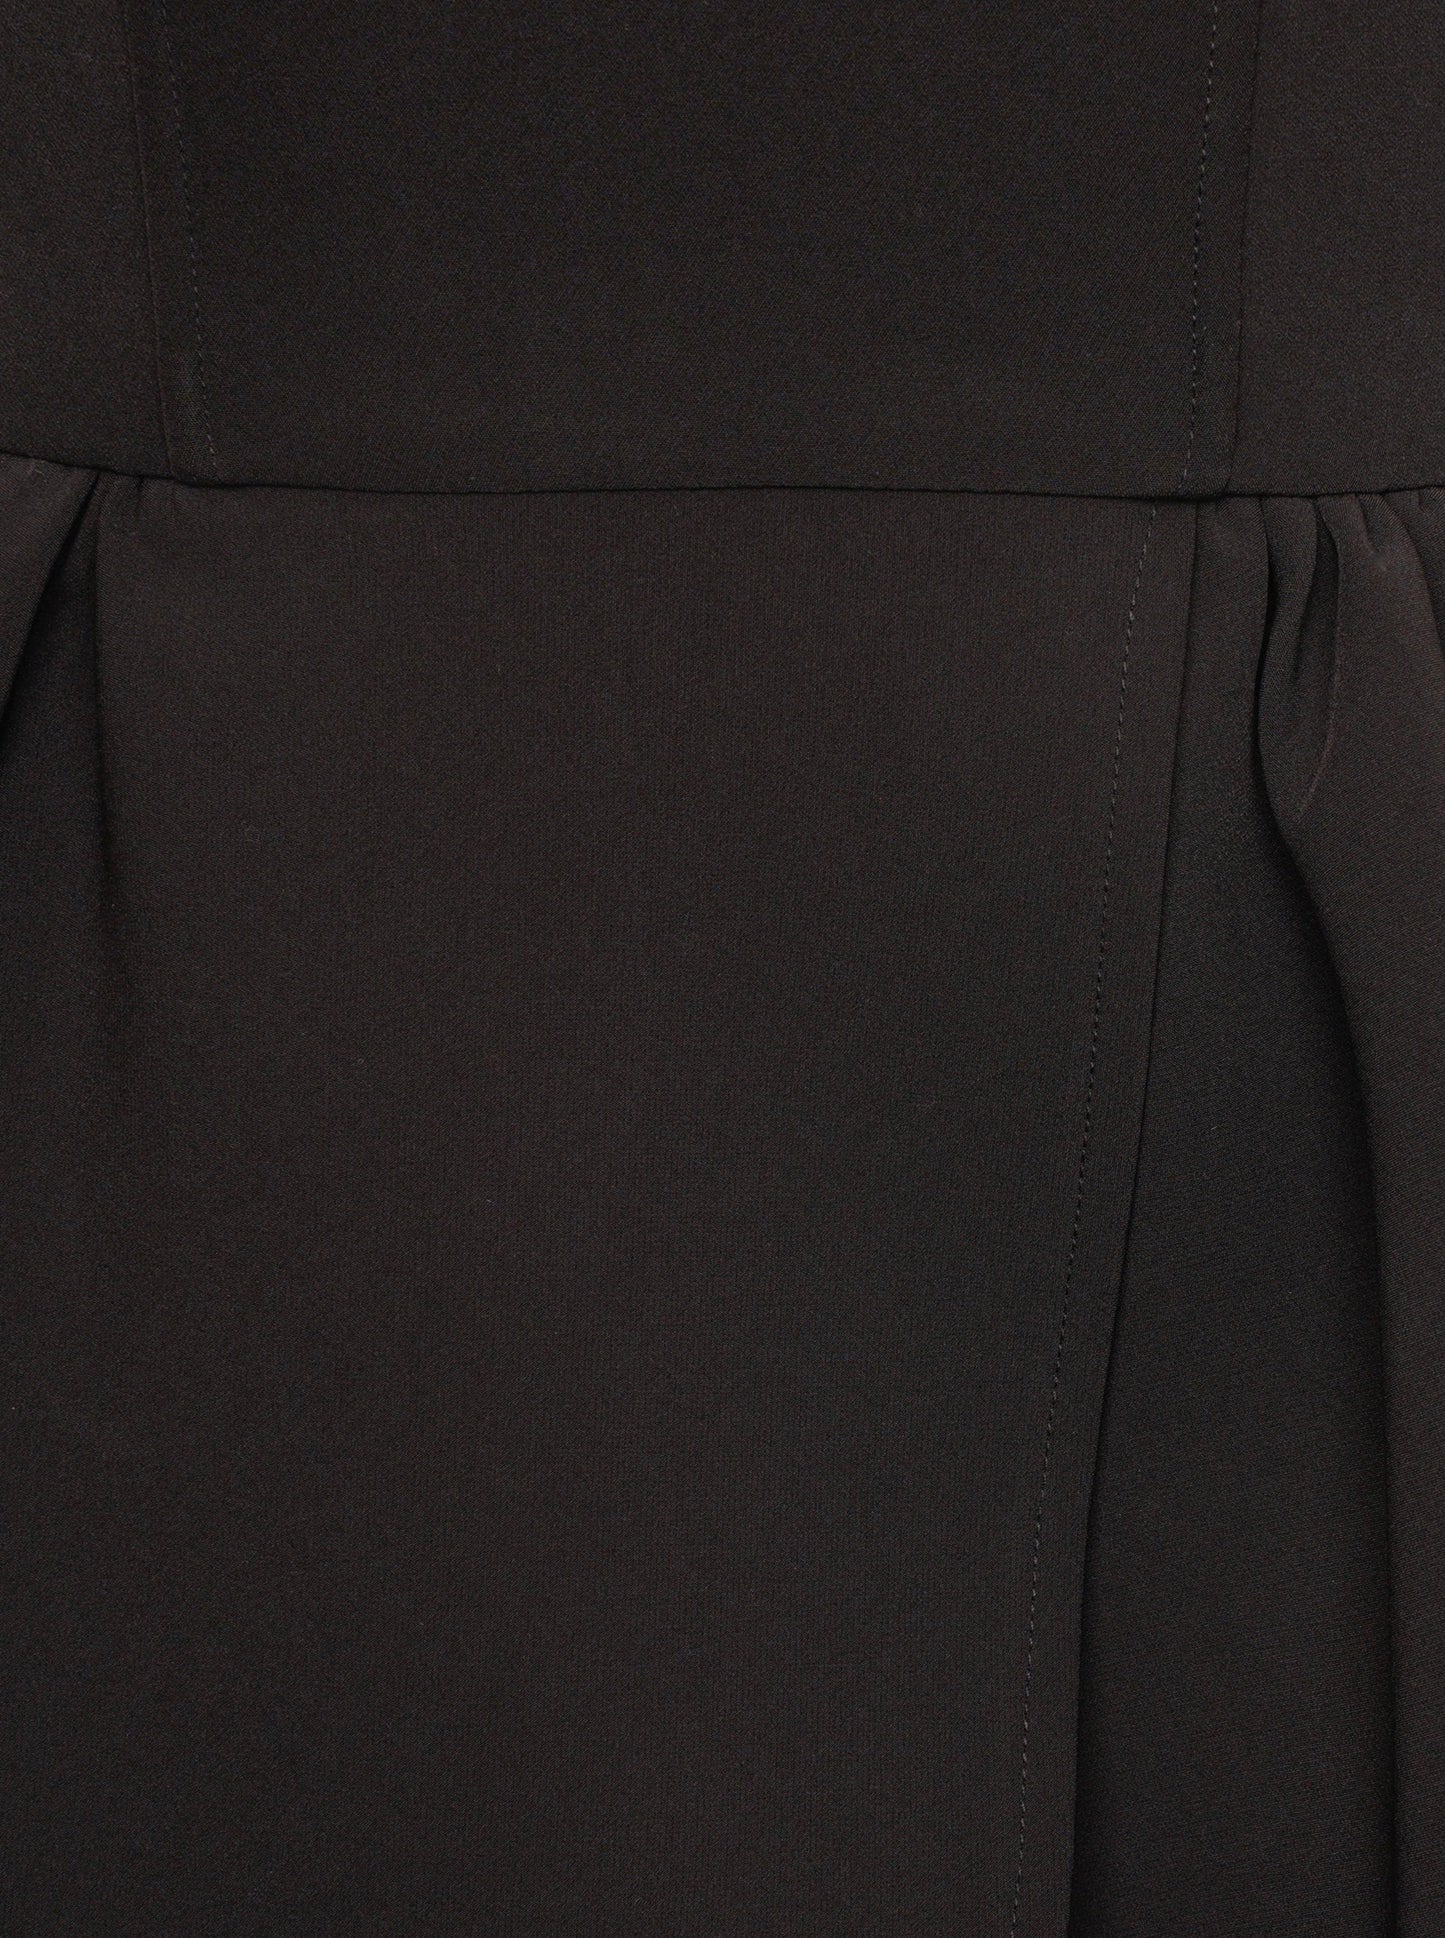 'ESTELLE' HOURGLASS BANDEAU WRAP FRONT MINI DRESS BLACK